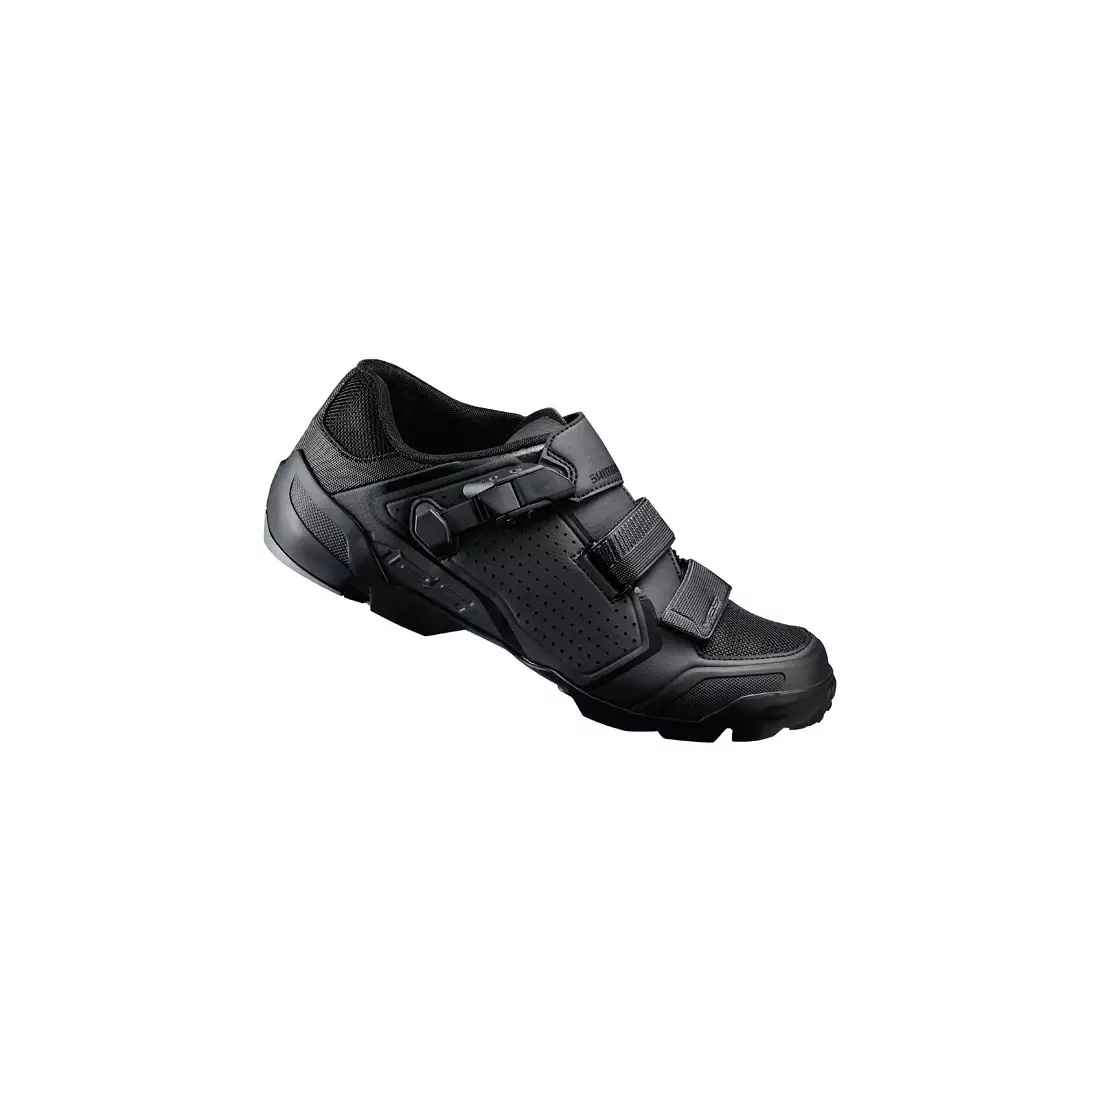 SHIMANO SH-ME500 cycling shoes, black